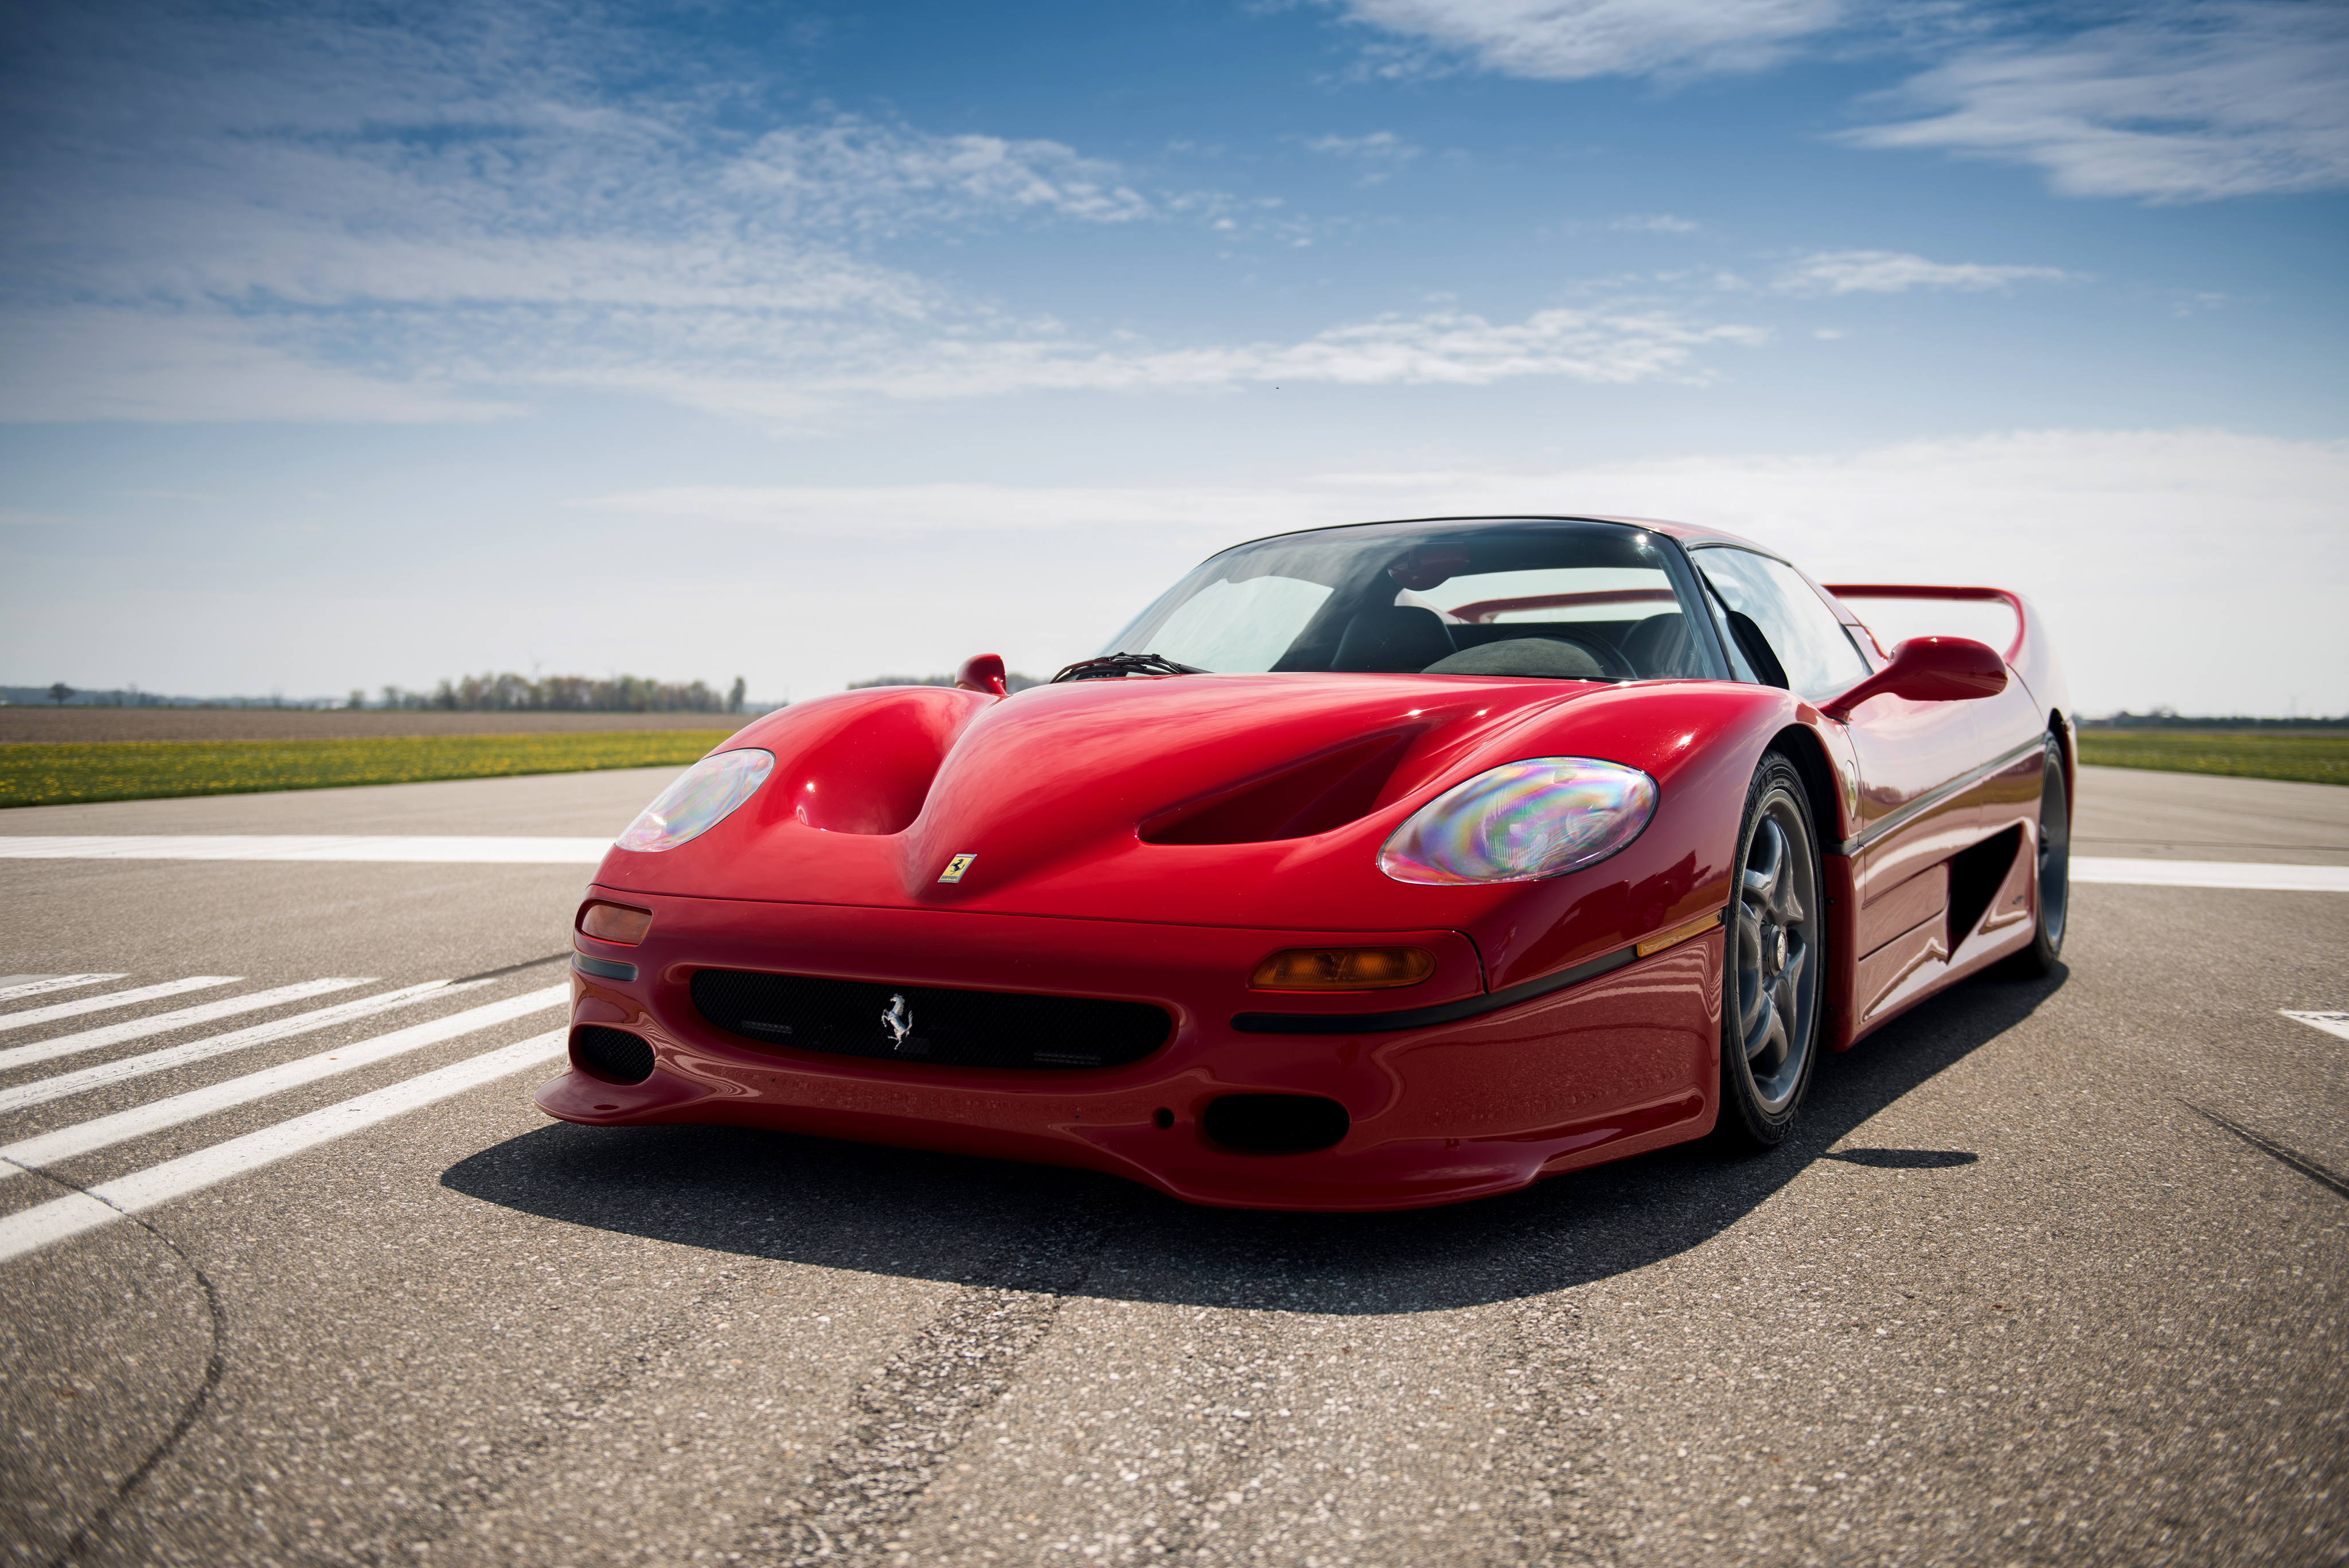 Красный ferrari. Машина Феррари f50. F50 Red Ferrari. Машина Феррари красный f50. Ferrari f50 1995.